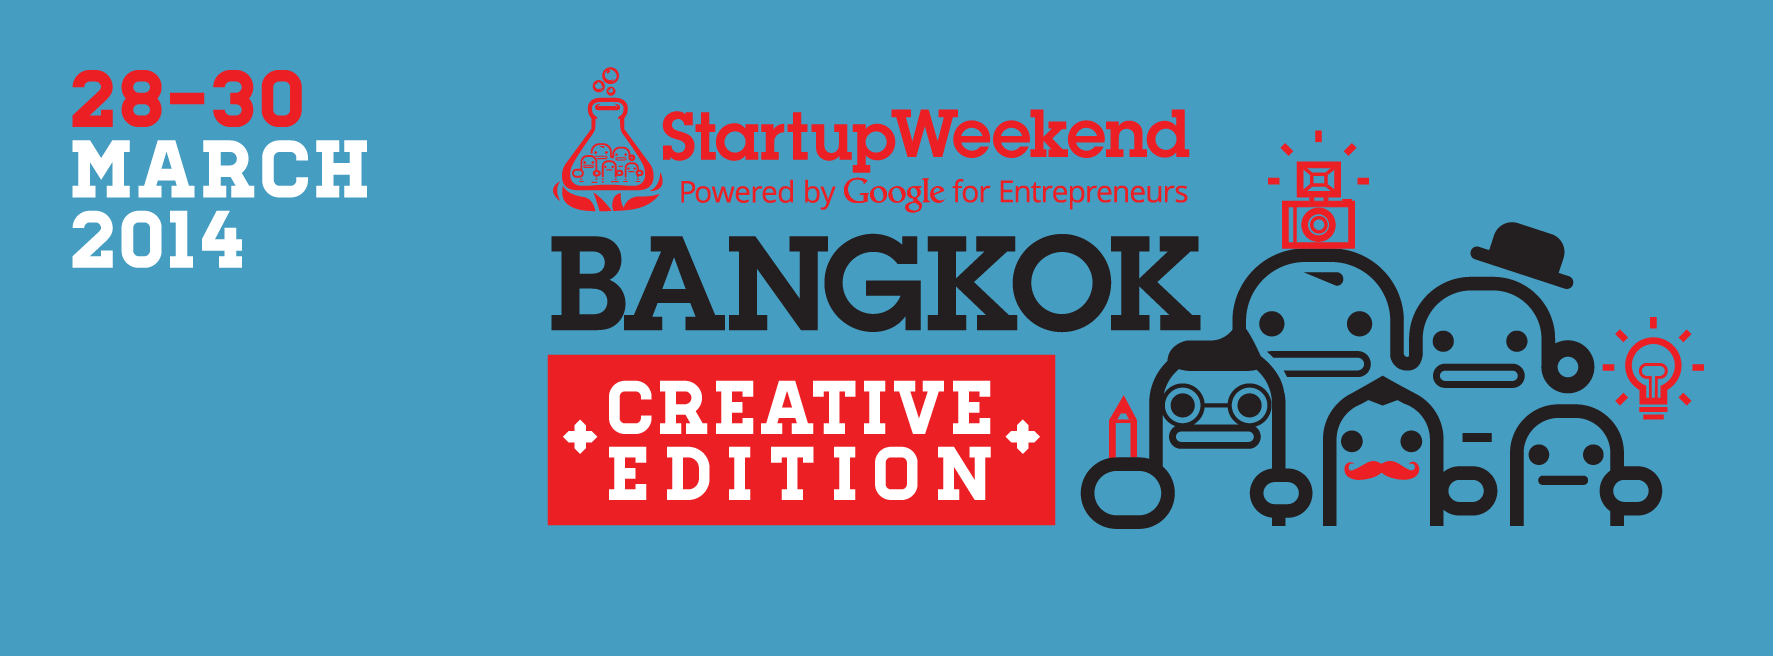 ตีฆ้องร้องป่าว ตามหา Creative / Programmer / Designer ร่วมงาน Startup Weekend!!